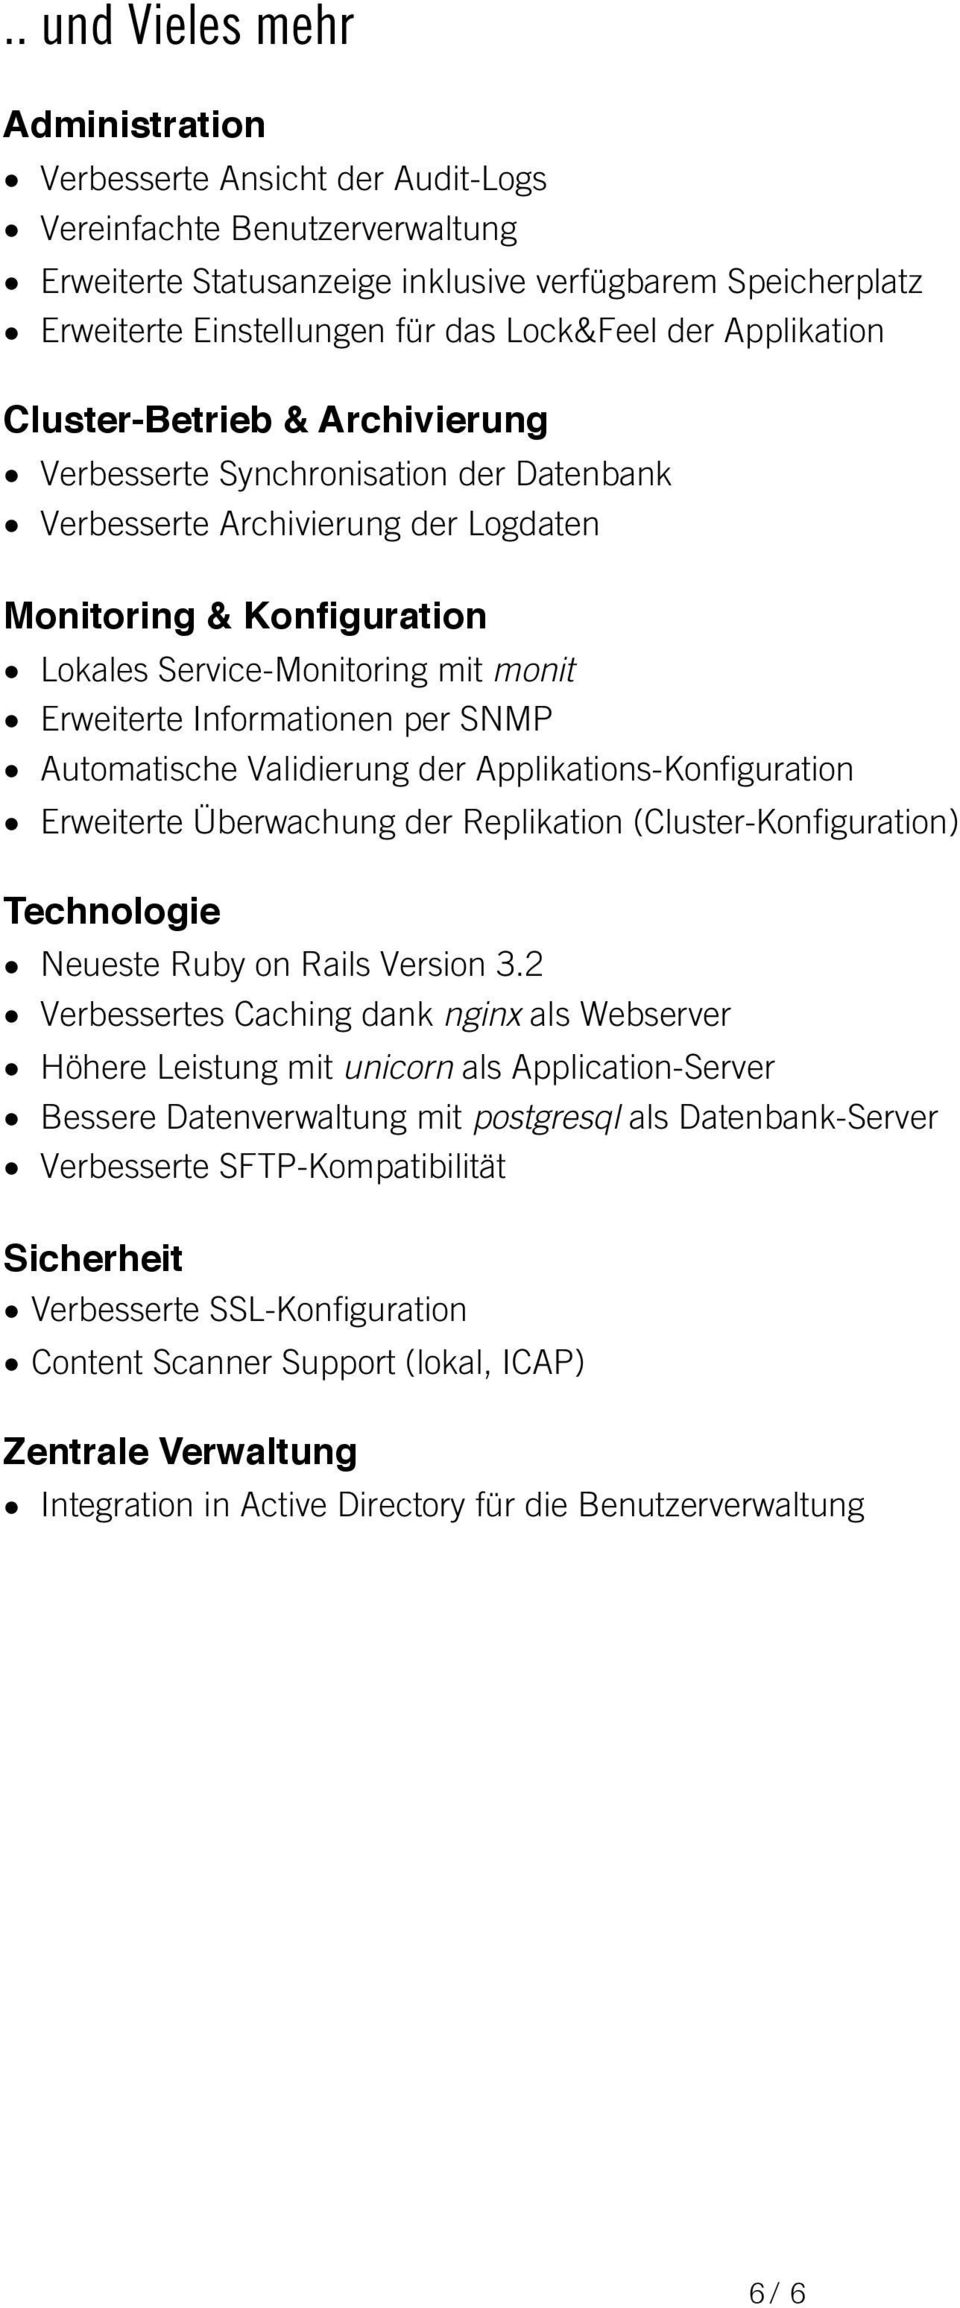 monit Erweiterte Informationen per SNMP Automatische Validierung der Applikations-Konfiguration Erweiterte Überwachung der Replikation (Cluster-Konfiguration) Technologie Neueste Ruby on Rails